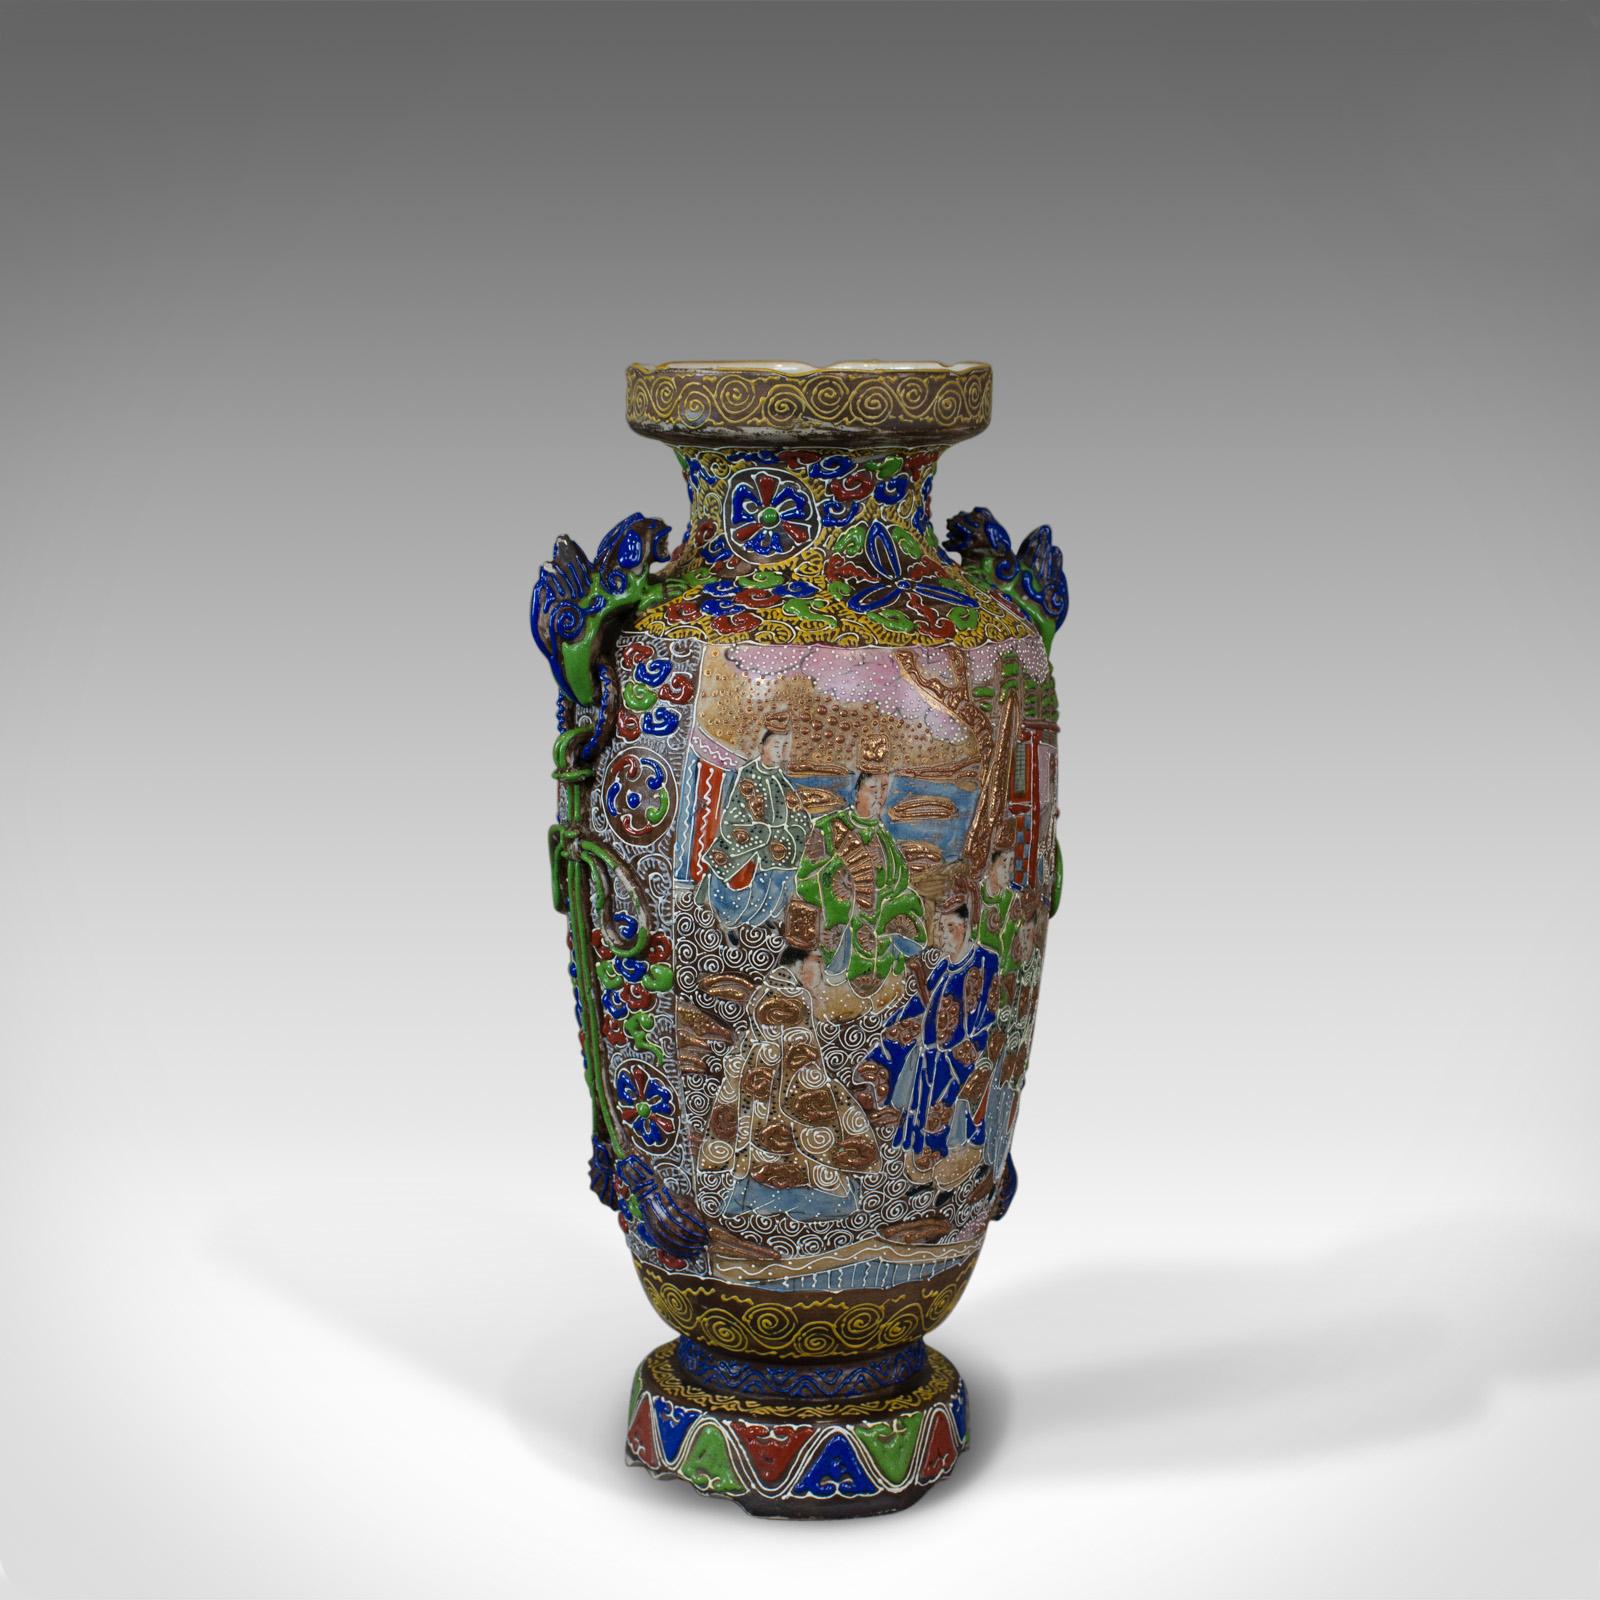 Dies ist eine Vintage-Balustervase. Ein orientalisches, sehr dekoratives Keramikgefäß aus der Mitte des 20. Jahrhunderts.

Von klassischer Form und in guter Proportion
Von hoher handwerklicher Qualität, frei von Schäden
Herstellermarke auf dem